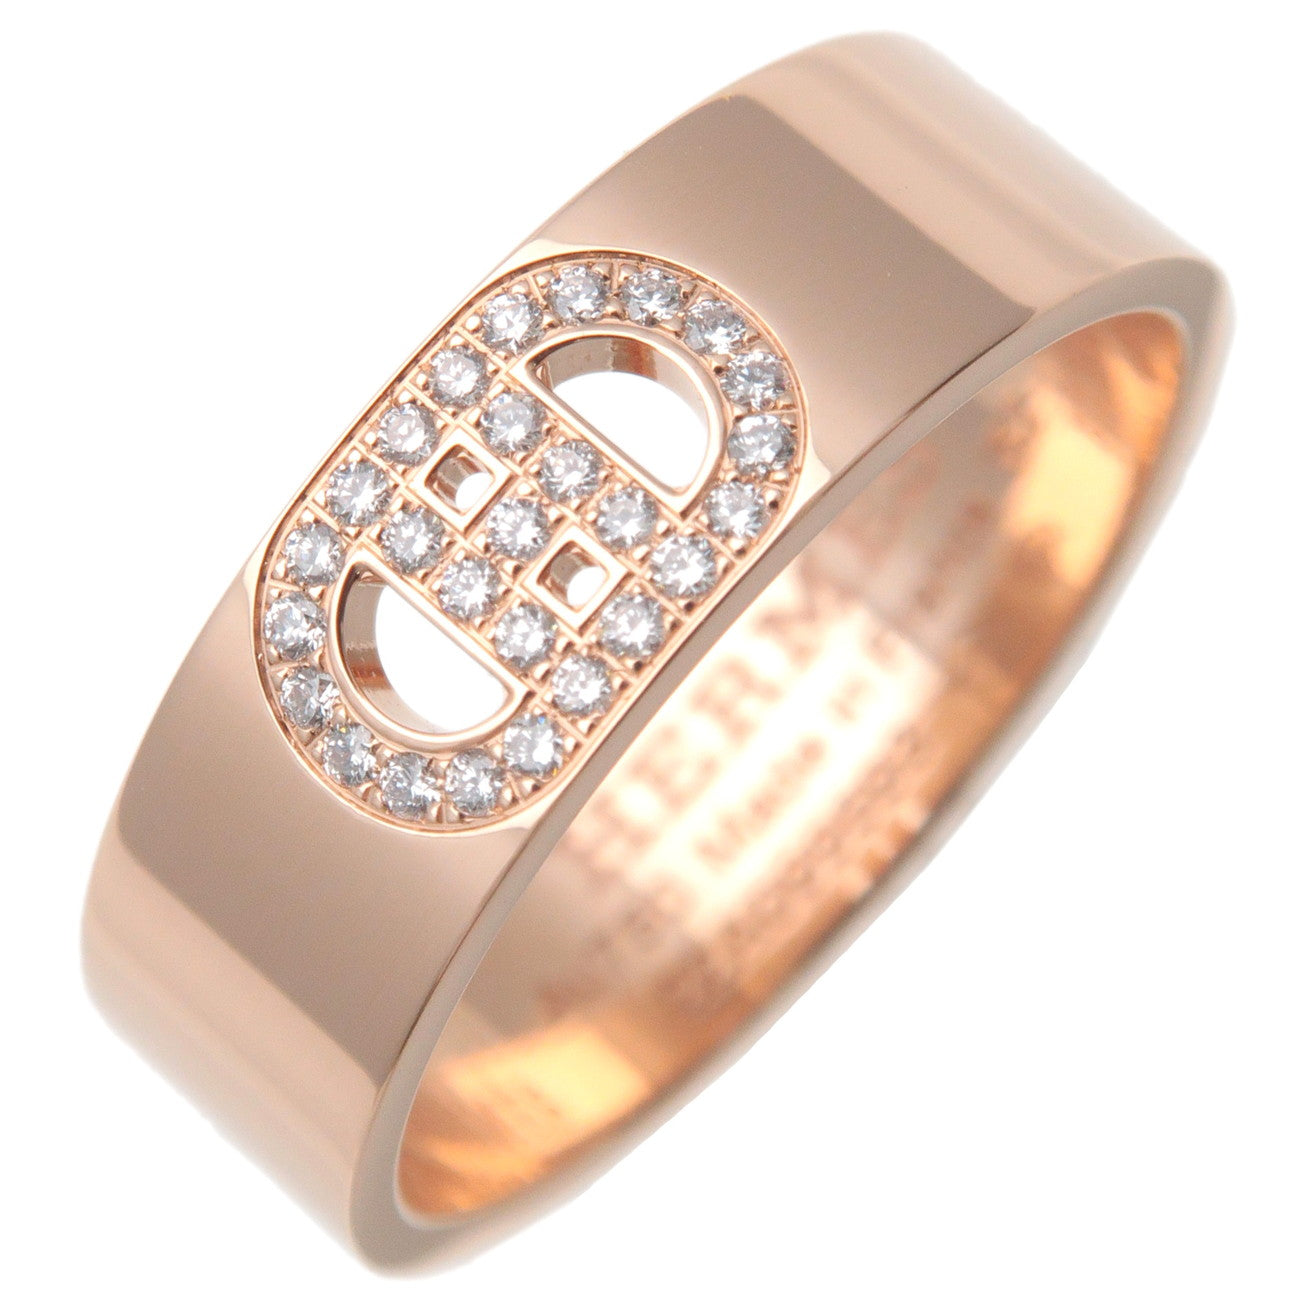 Hermes-H-Dunkle-Diamond-Ring-PM-K18PG-Rose-Gold-#52-US6-6.5